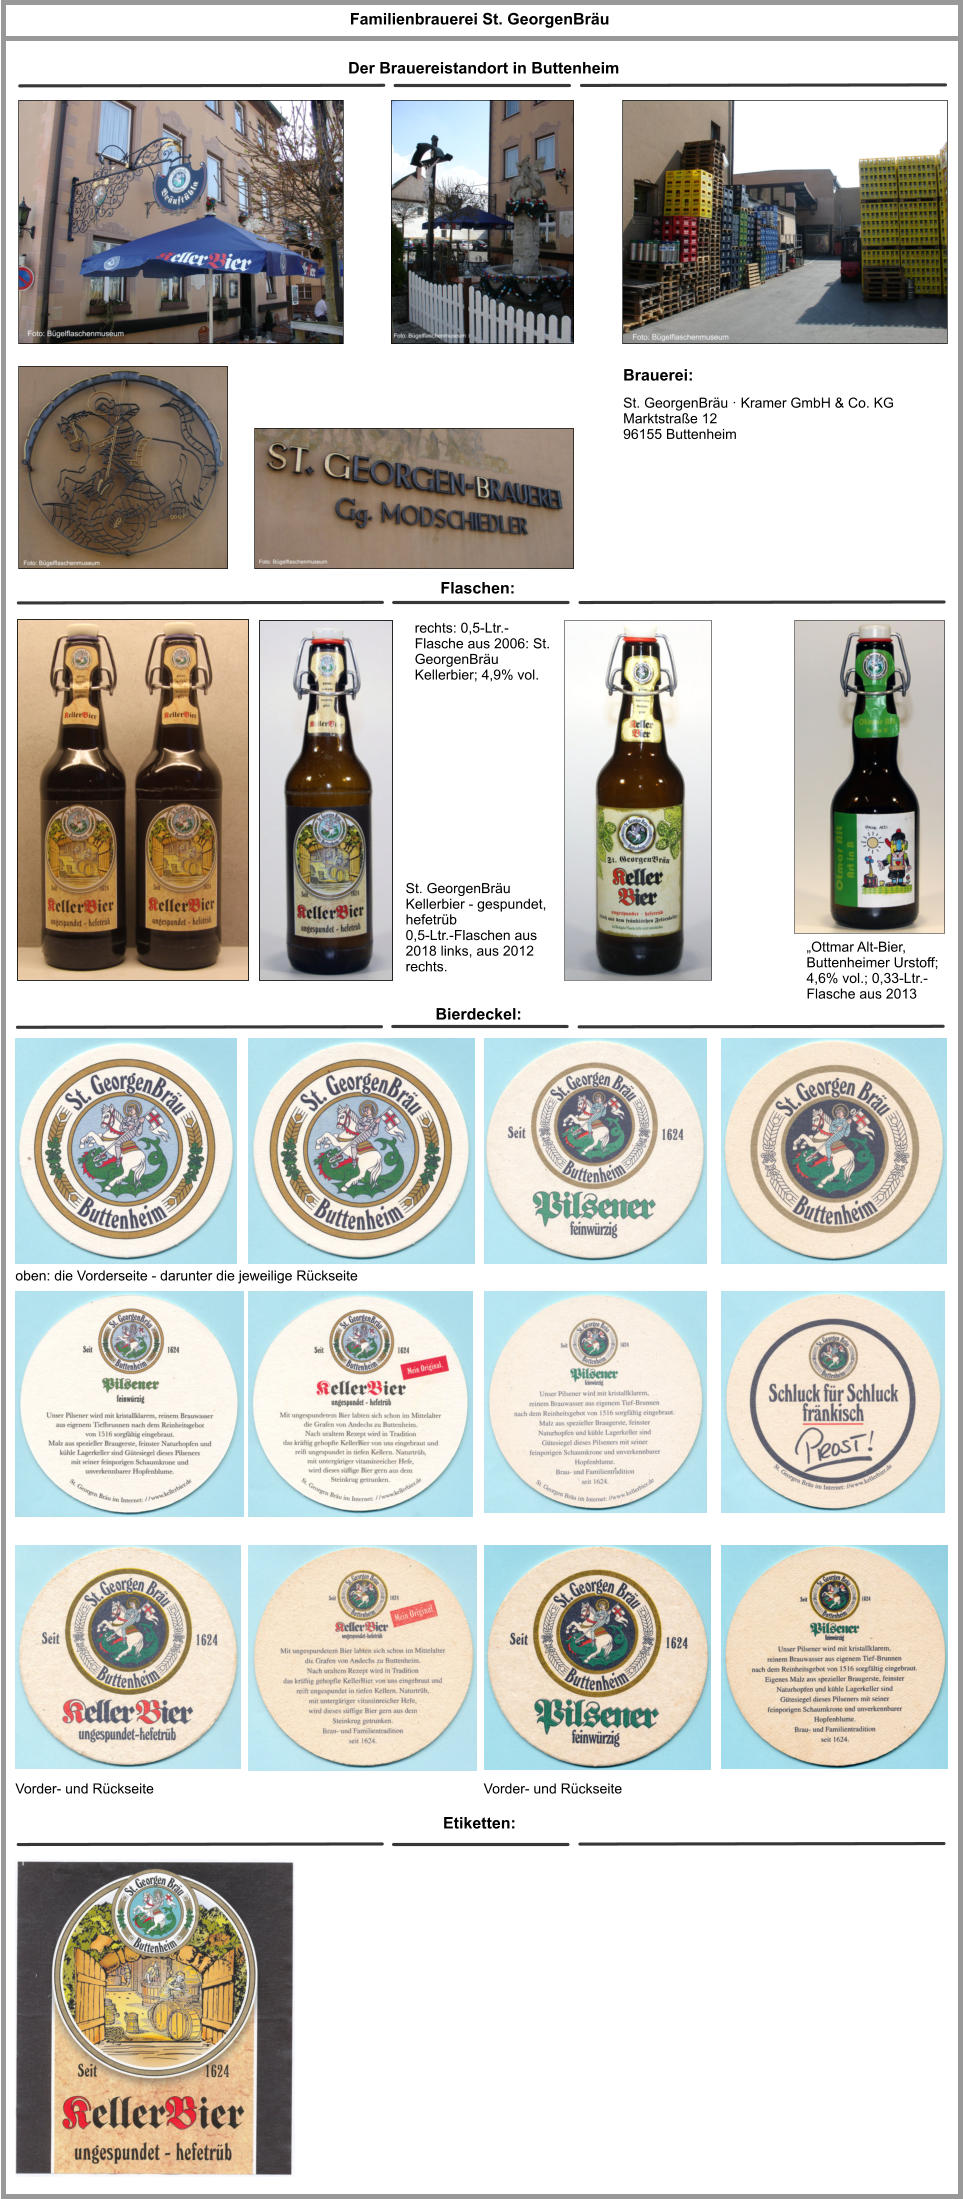 St. GeorgenBräu · Kramer GmbH & Co. KG Marktstraße 12 96155 Buttenheim Familienbrauerei St. GeorgenBräu Brauerei: Bierdeckel: St. GeorgenBräu Kellerbier - gespundet, hefetrüb 0,5-Ltr.-Flaschen aus 2018 links, aus 2012 rechts. oben: die Vorderseite - darunter die jeweilige Rückseite Der Brauereistandort in Buttenheim Flaschen: Vorder- und Rückseite „Ottmar Alt-Bier, Buttenheimer Urstoff; 4,6% vol.; 0,33-Ltr.-Flasche aus 2013 Etiketten: Vorder- und Rückseite rechts: 0,5-Ltr.-Flasche aus 2006: St. GeorgenBräu Kellerbier; 4,9% vol.